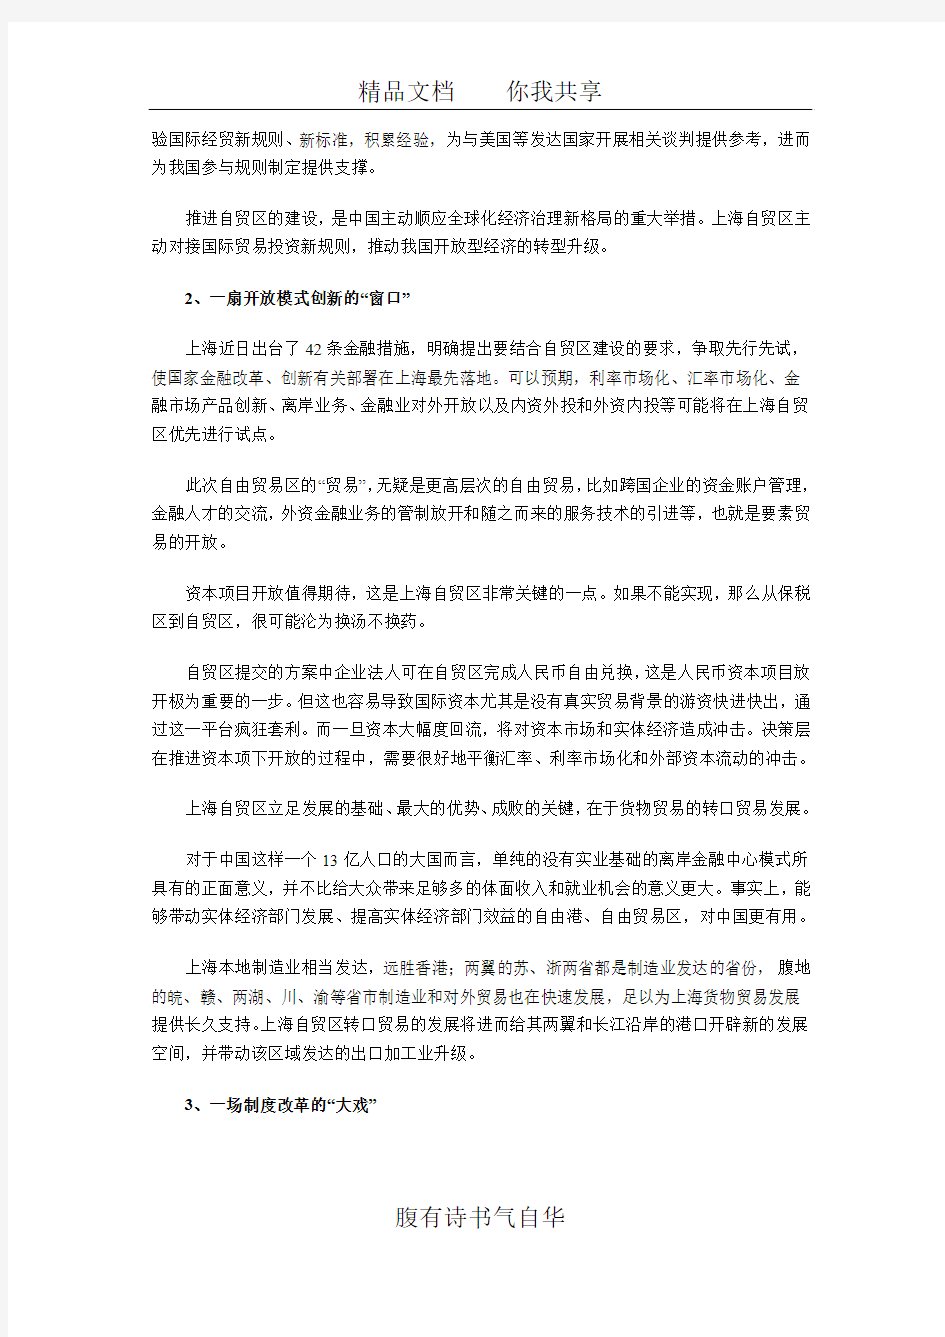 上海自贸区为中国带来什么(整理)